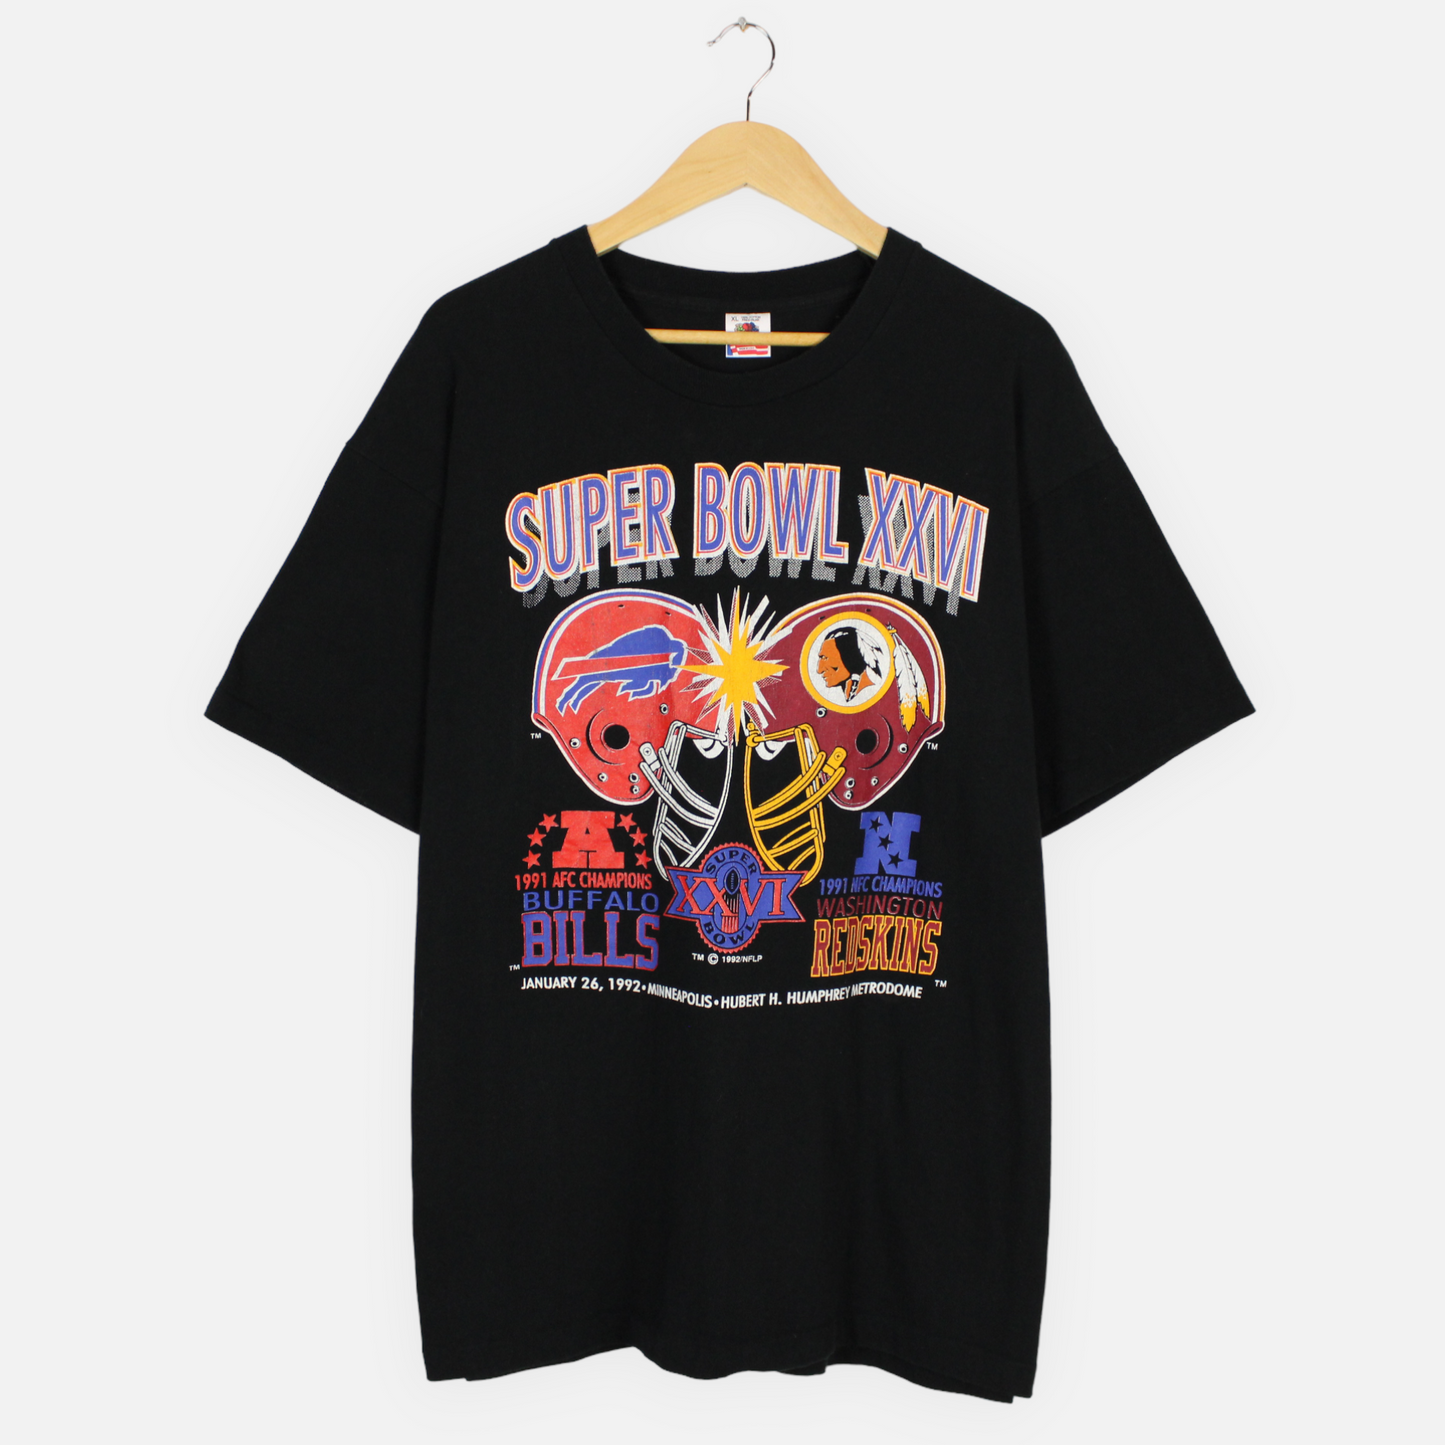 Vintage 1992 Bills vs Redskins Super Bowl NFL Tee - XL